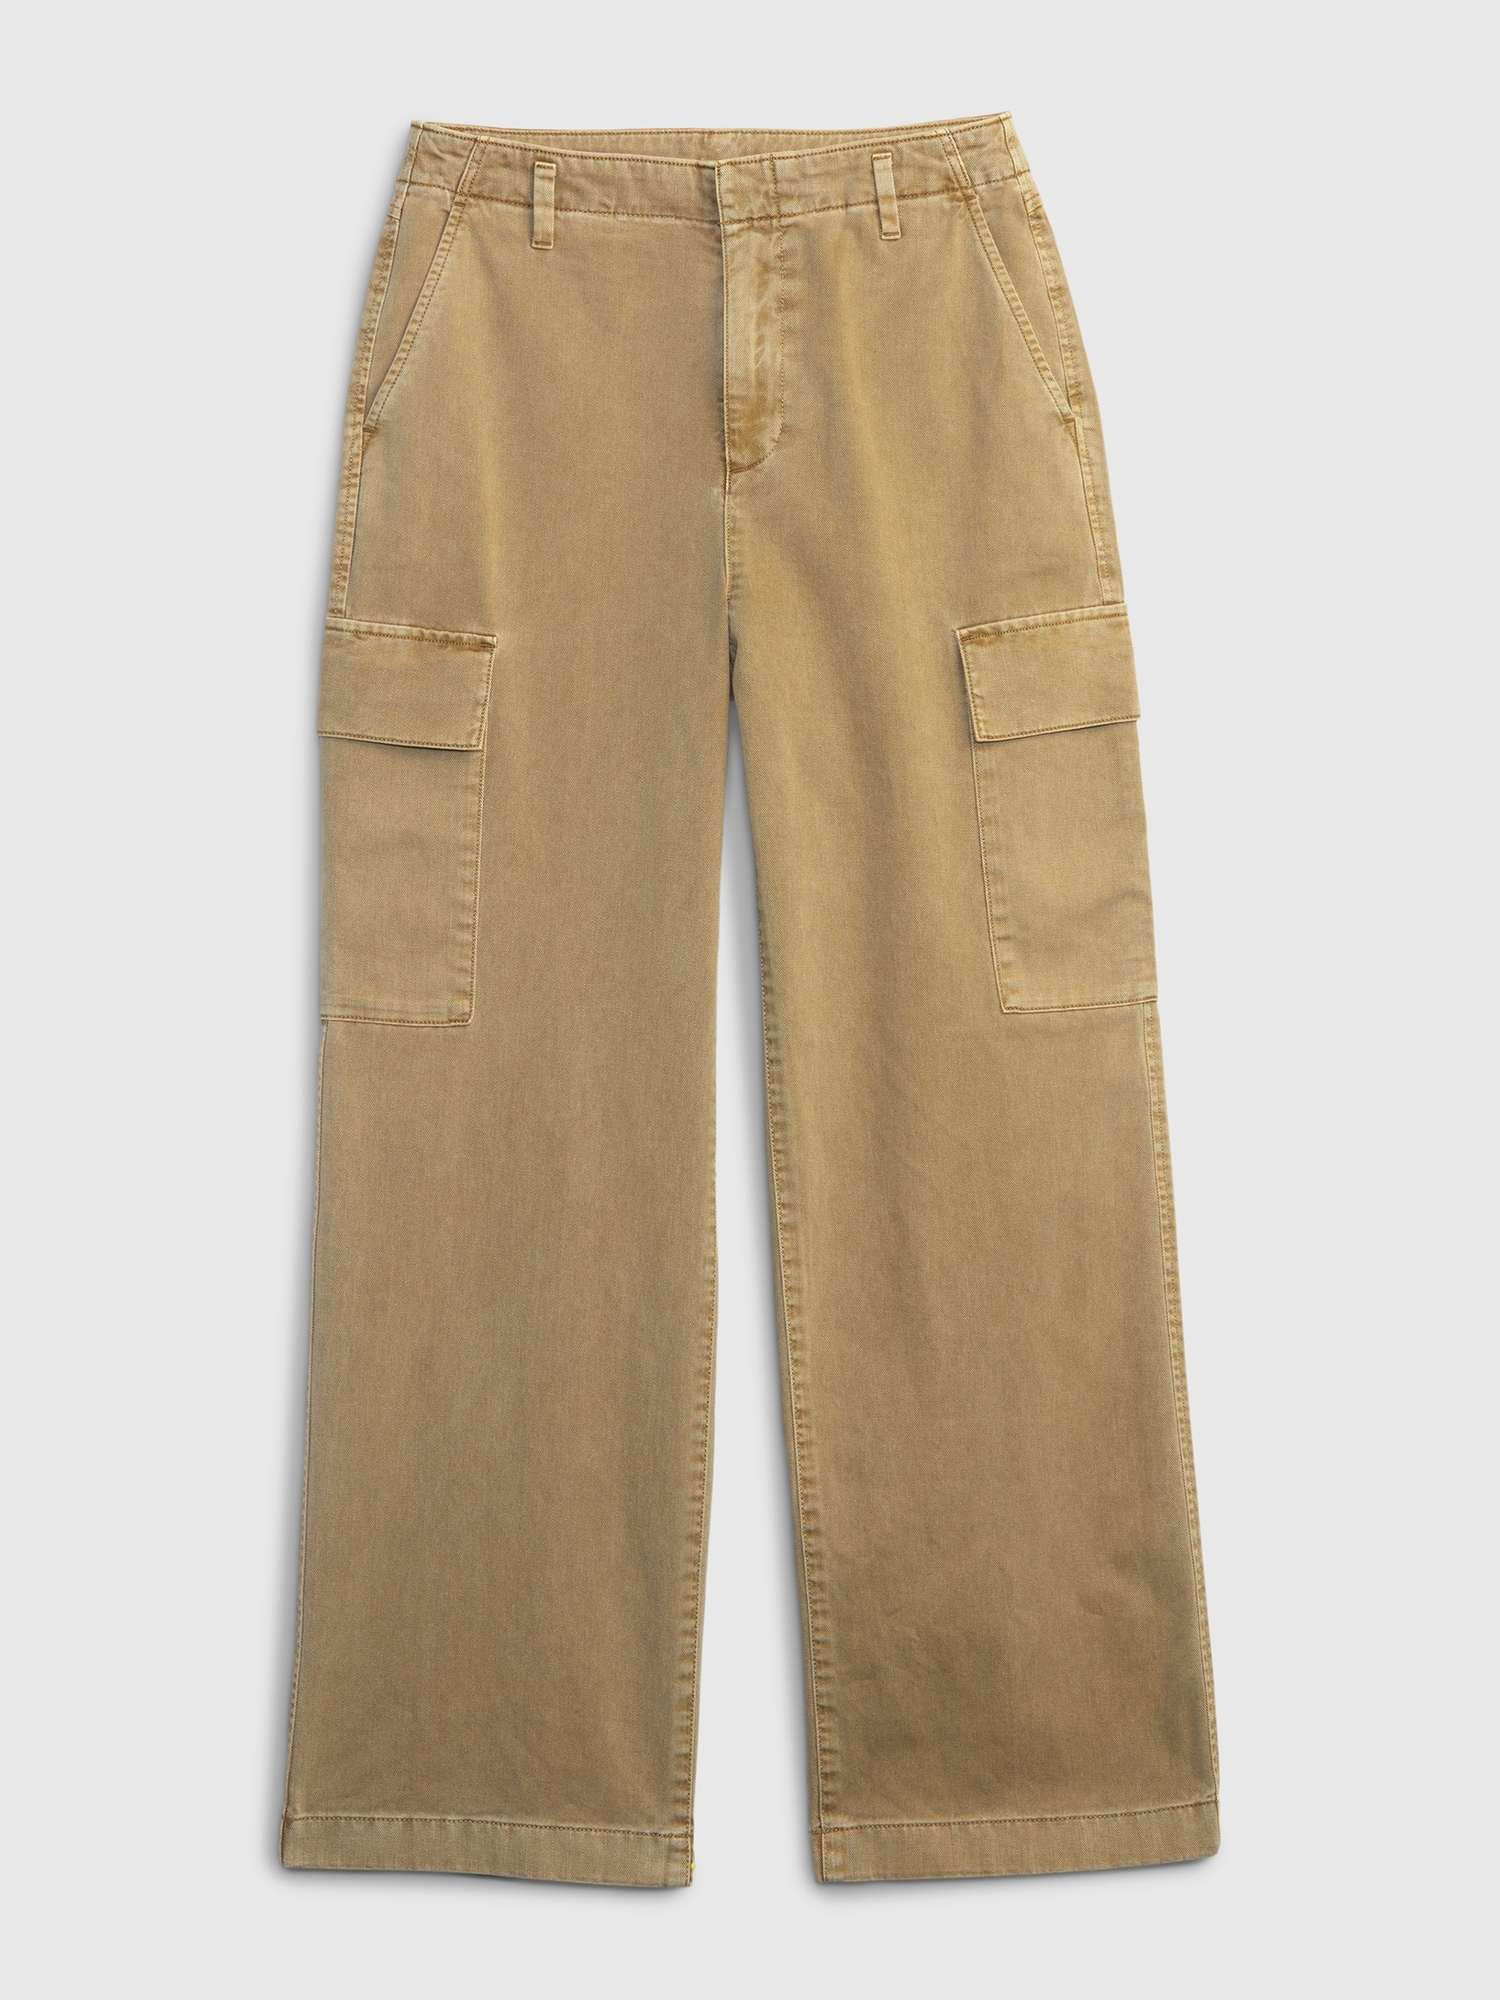 Loose Khaki Cargo Pants with Washwell | Gap